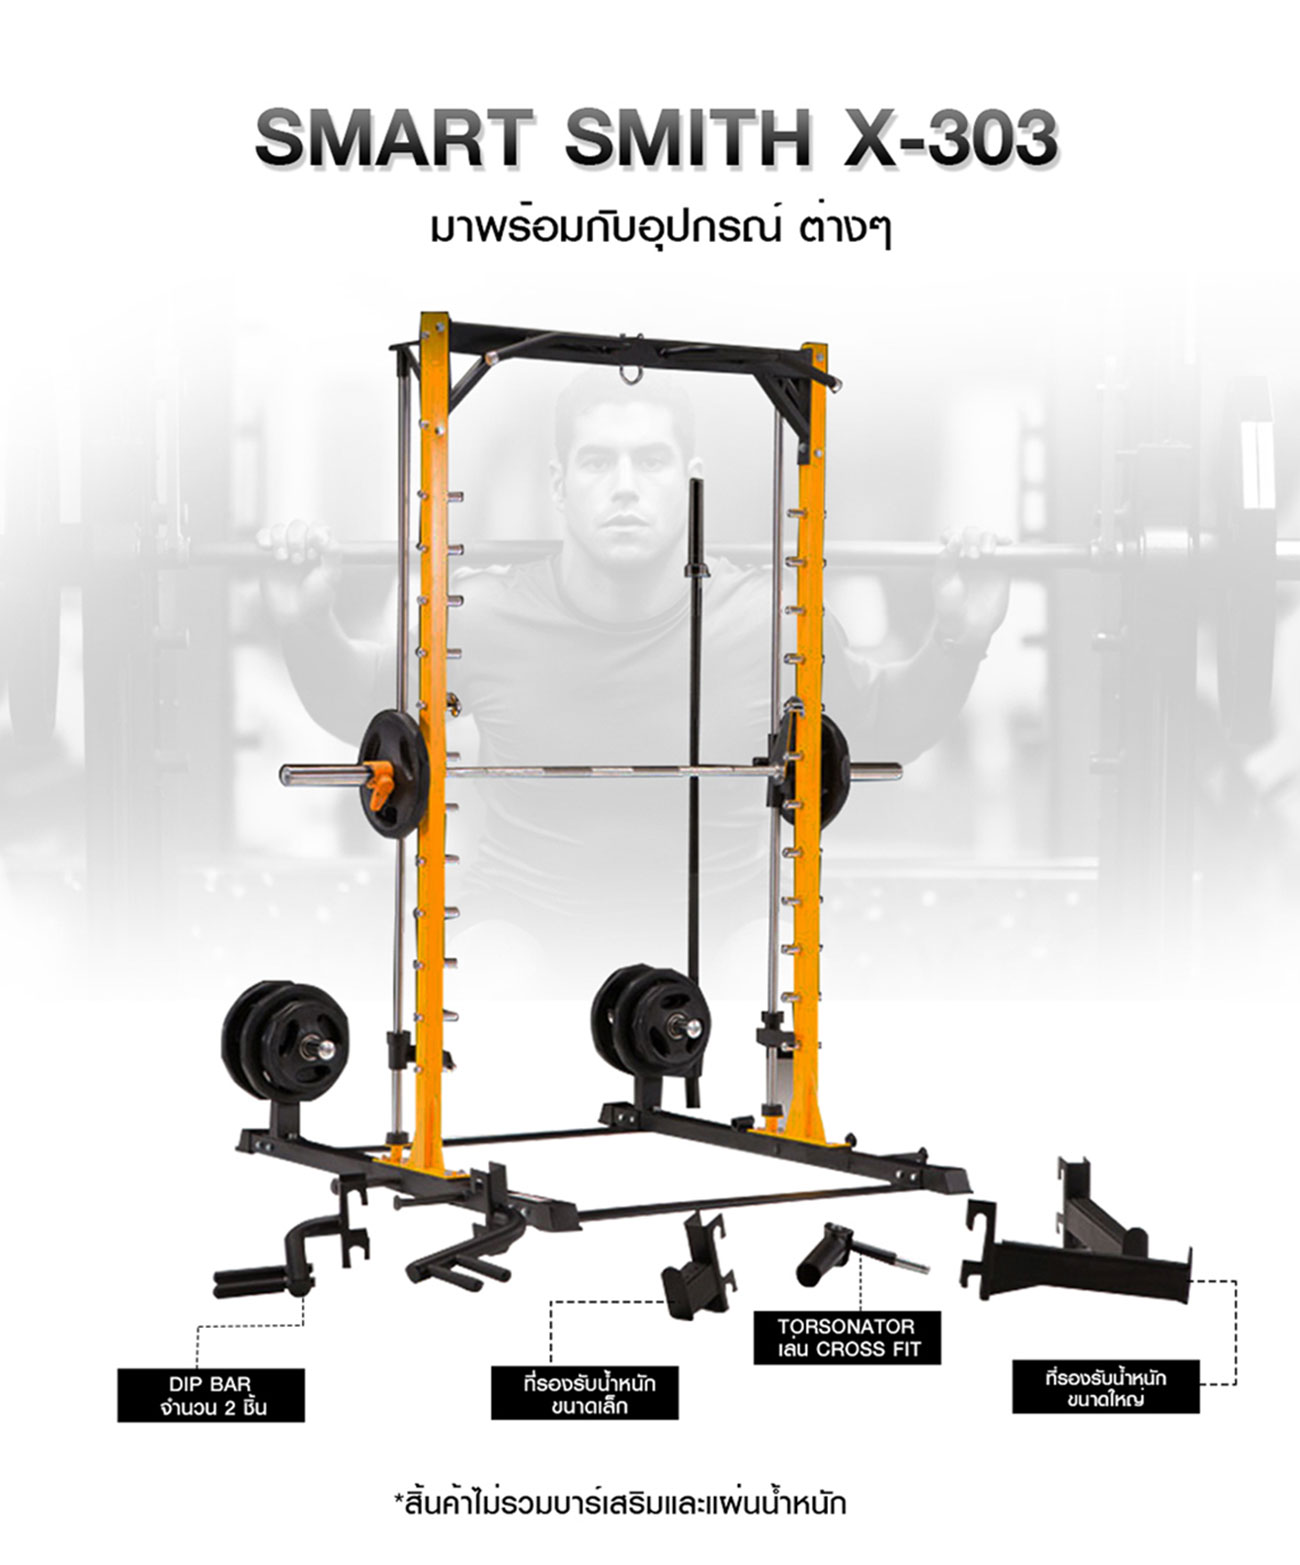 Smart Smith สมิท แมชชีน รุ่น X-303